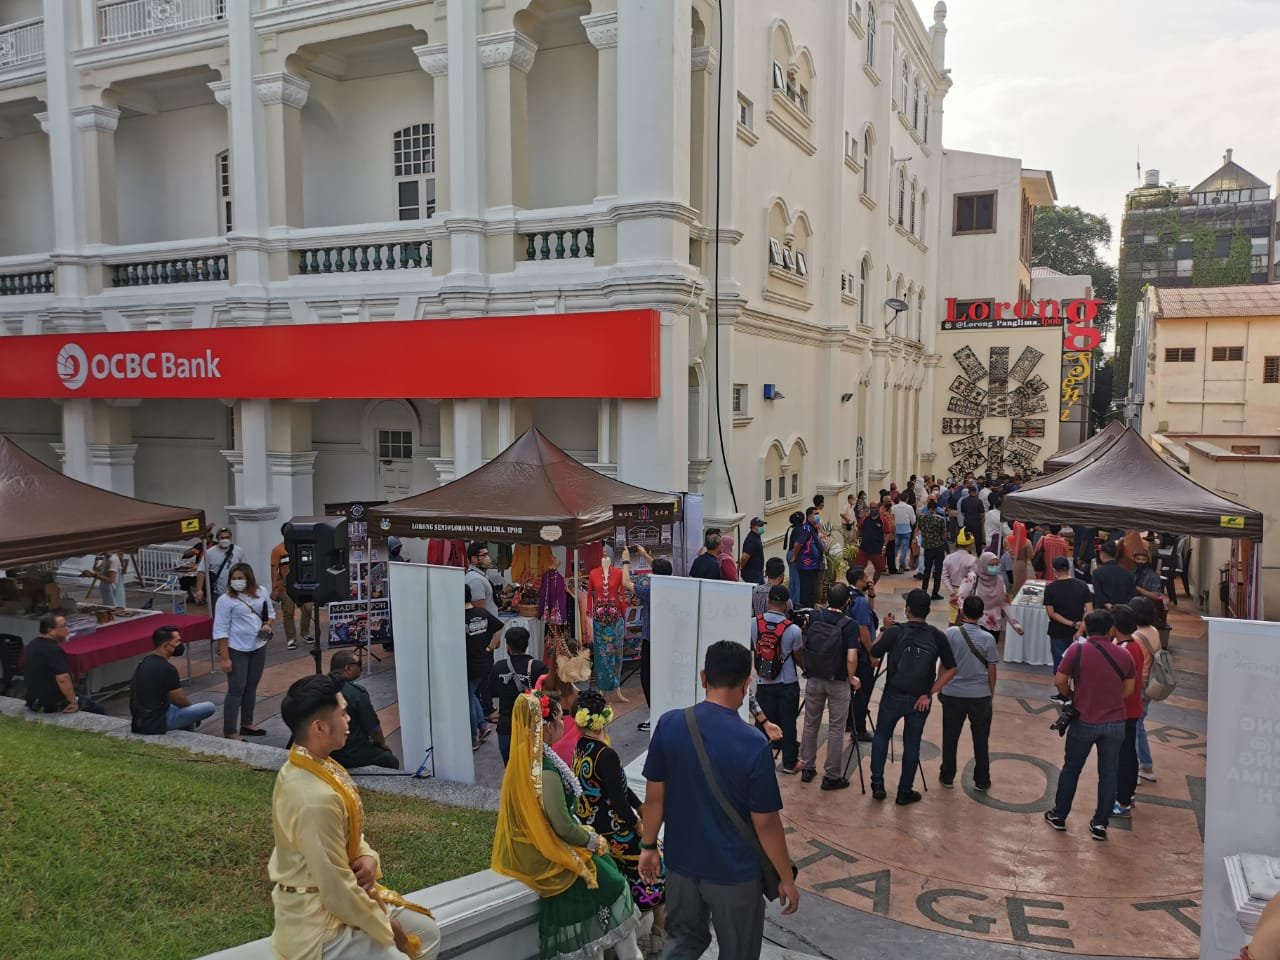 “艺术巷”于每逢周六上午8时至中午1时开市，访客可到此与商家进行文化交流。